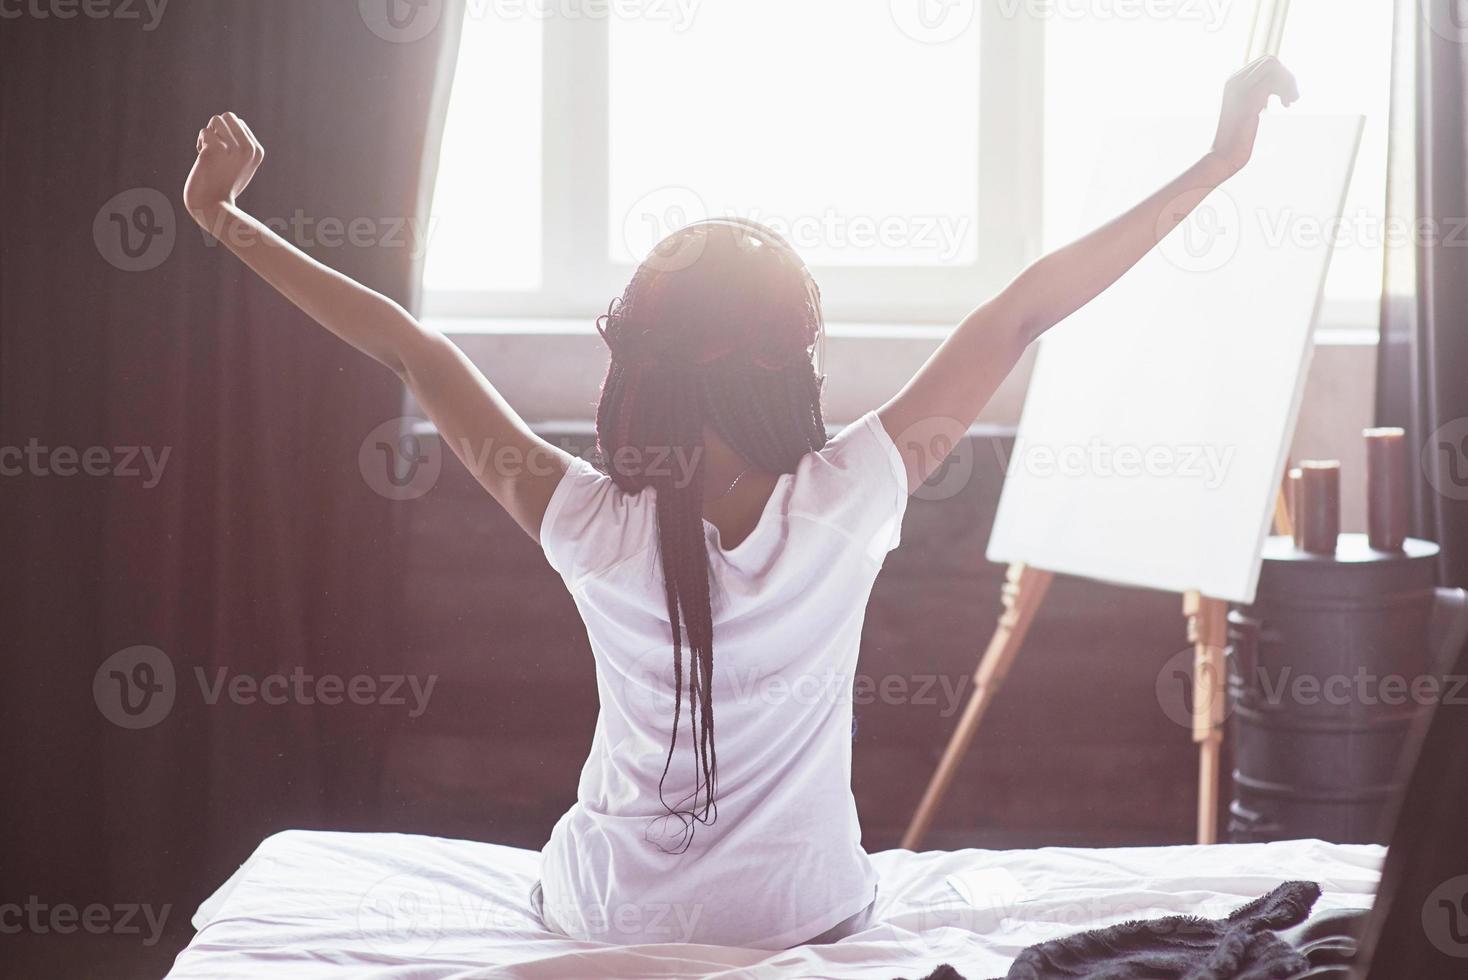 mooie zwarte vrouw die wakker wordt in haar bed, ze lacht en strekt zich uit foto